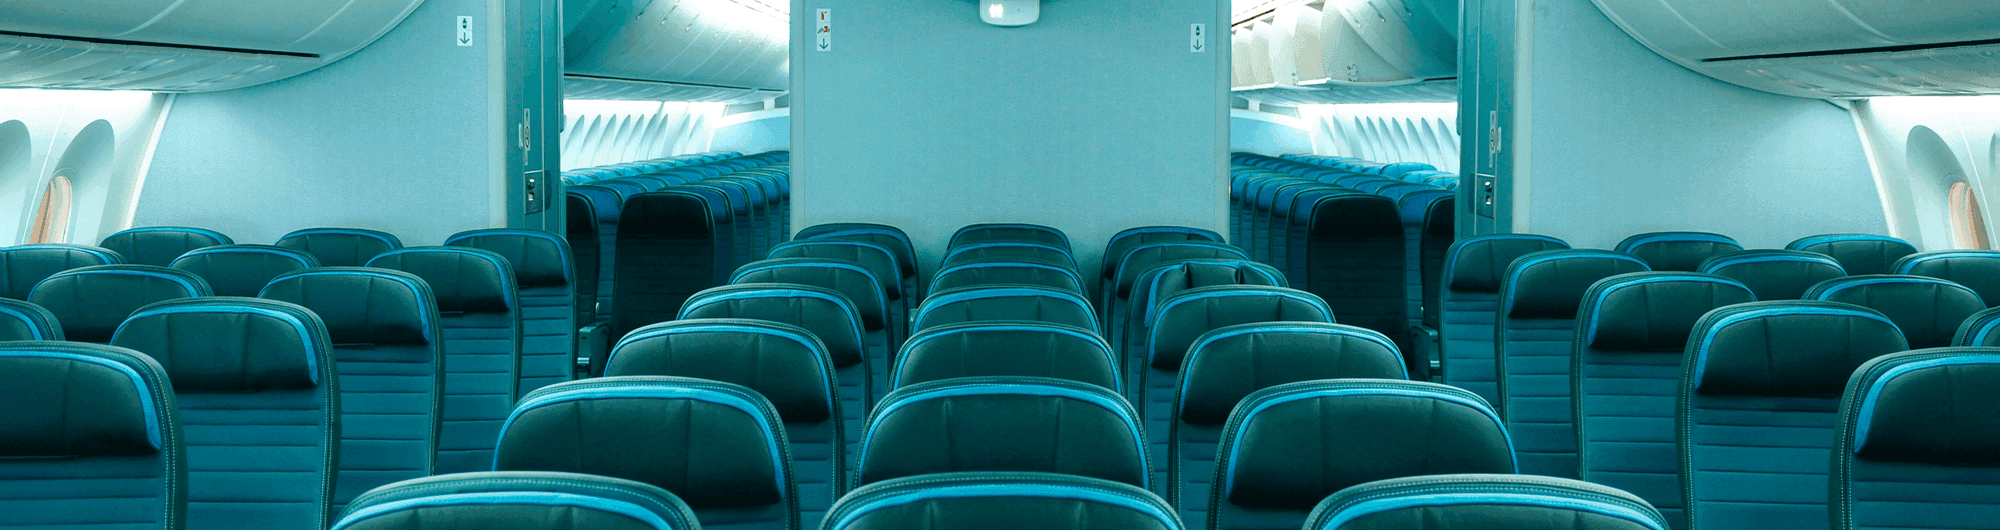 assentos de interior de avião em azul 